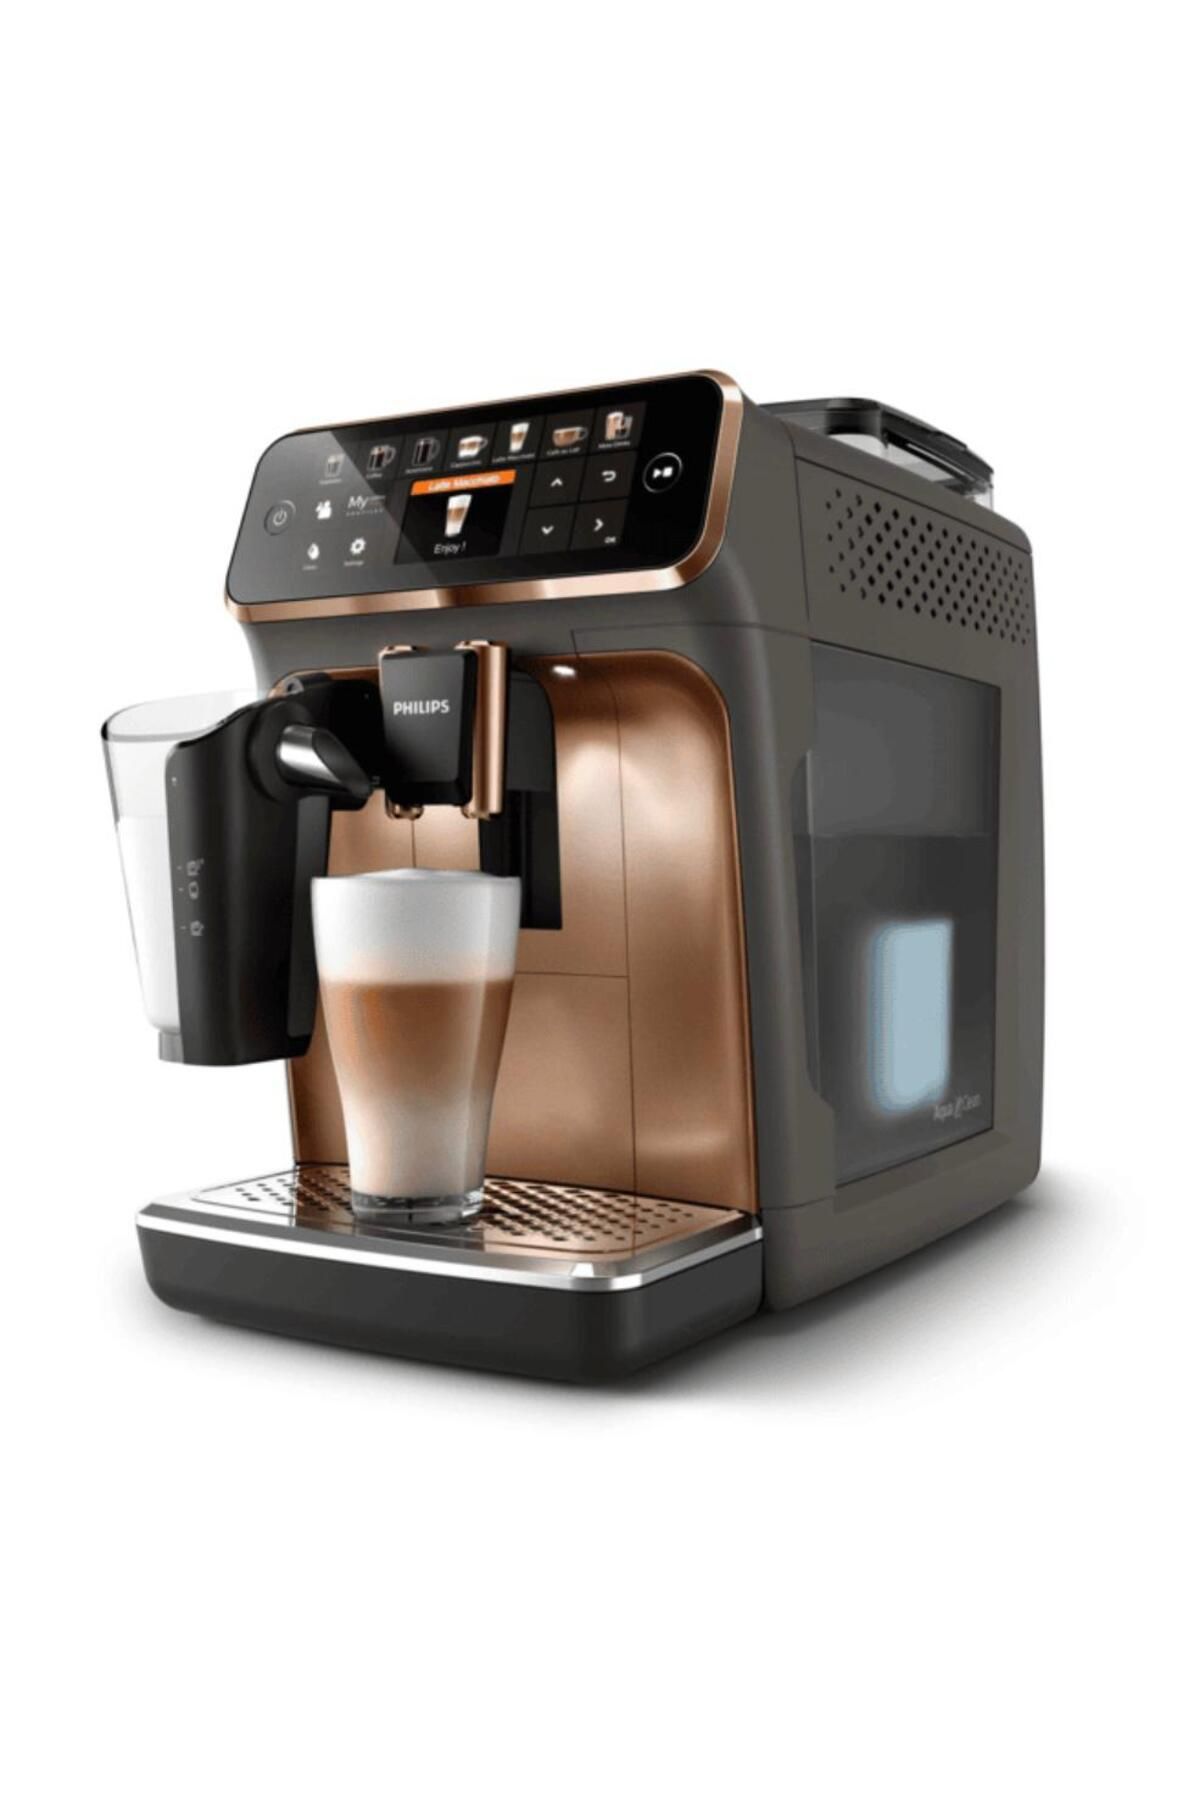 Philips Son Seri Ultra Premium Tam Otomatik Kahve ve Espresso Makinesi - 12 Farklı İçecek - Tft Ekran